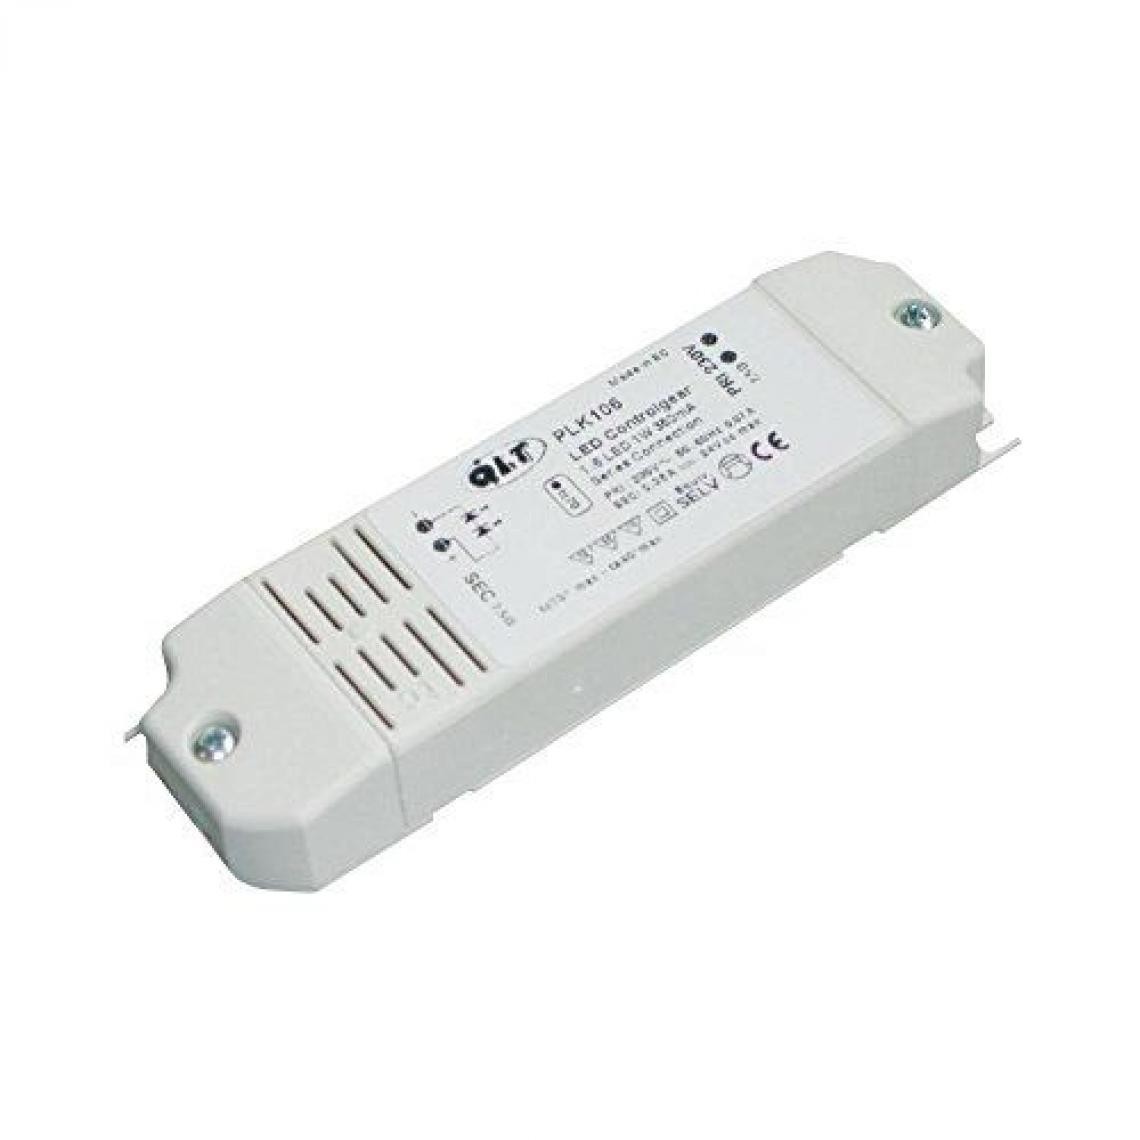 Inconnu - Convertisseur LED QLT PLK 303 A40PLK3033WB 12 V/DC Tension de fonctionnement (max.): 230 V/AC - Convertisseurs